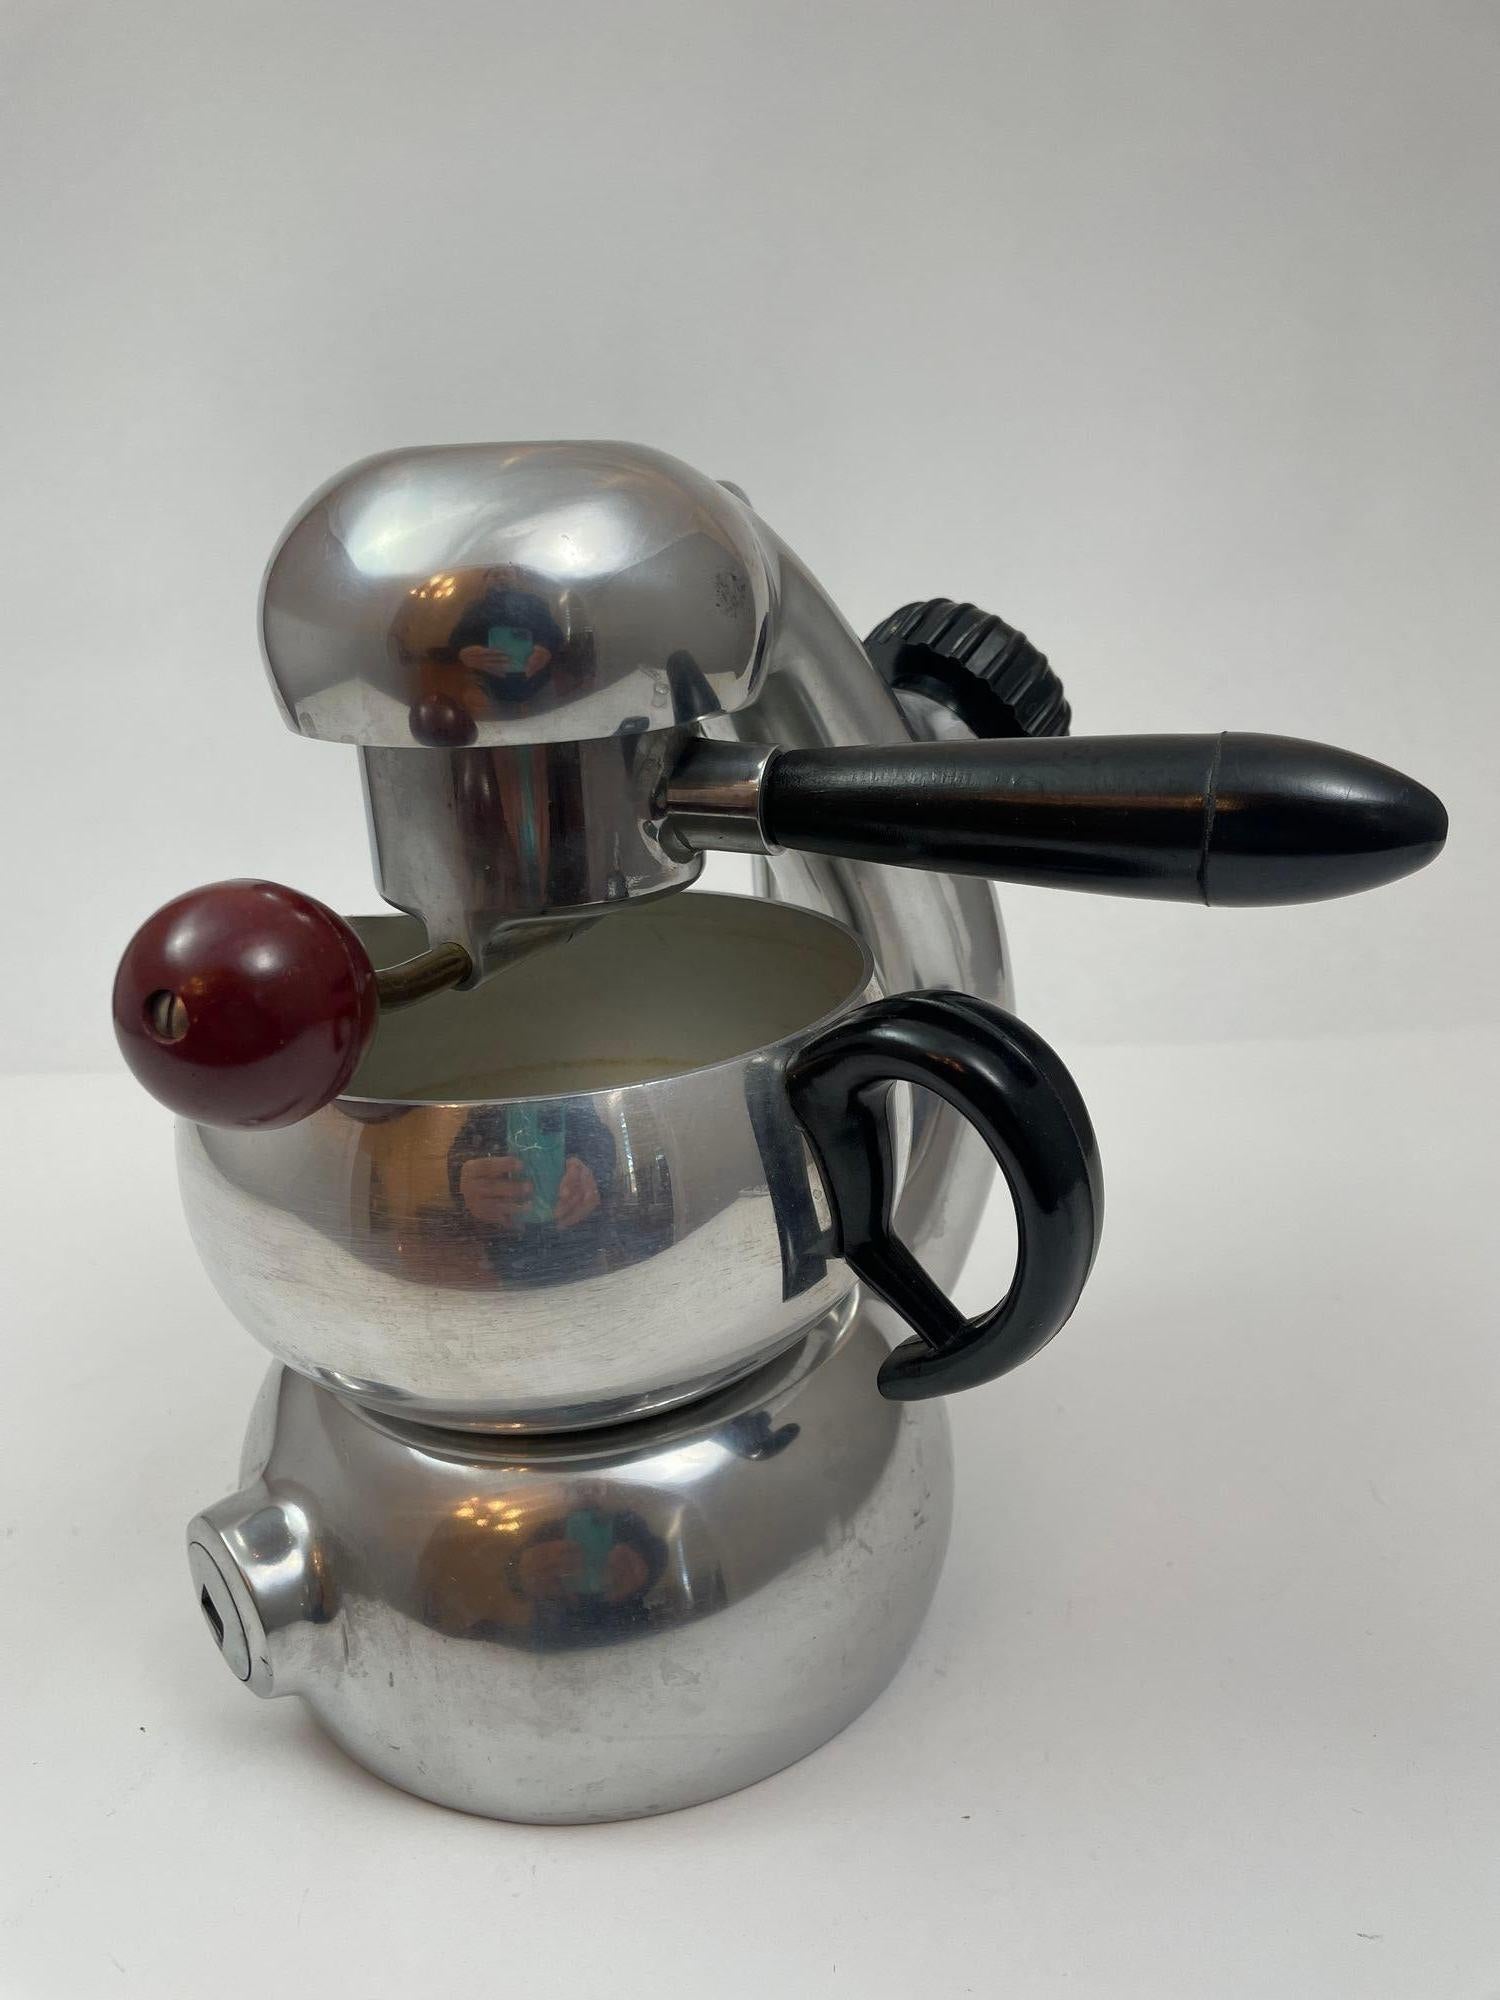 Die kultige Atomic-Kaffeemaschine von Giordano Robbiati aus den 1950er Jahren verkörpert eine Mischung aus Vintage-Charme und robuster Funktionalität. Diese Brevetti Robbiati Milano mit ihren eleganten, geschwungenen Linien und ihrer beständigen